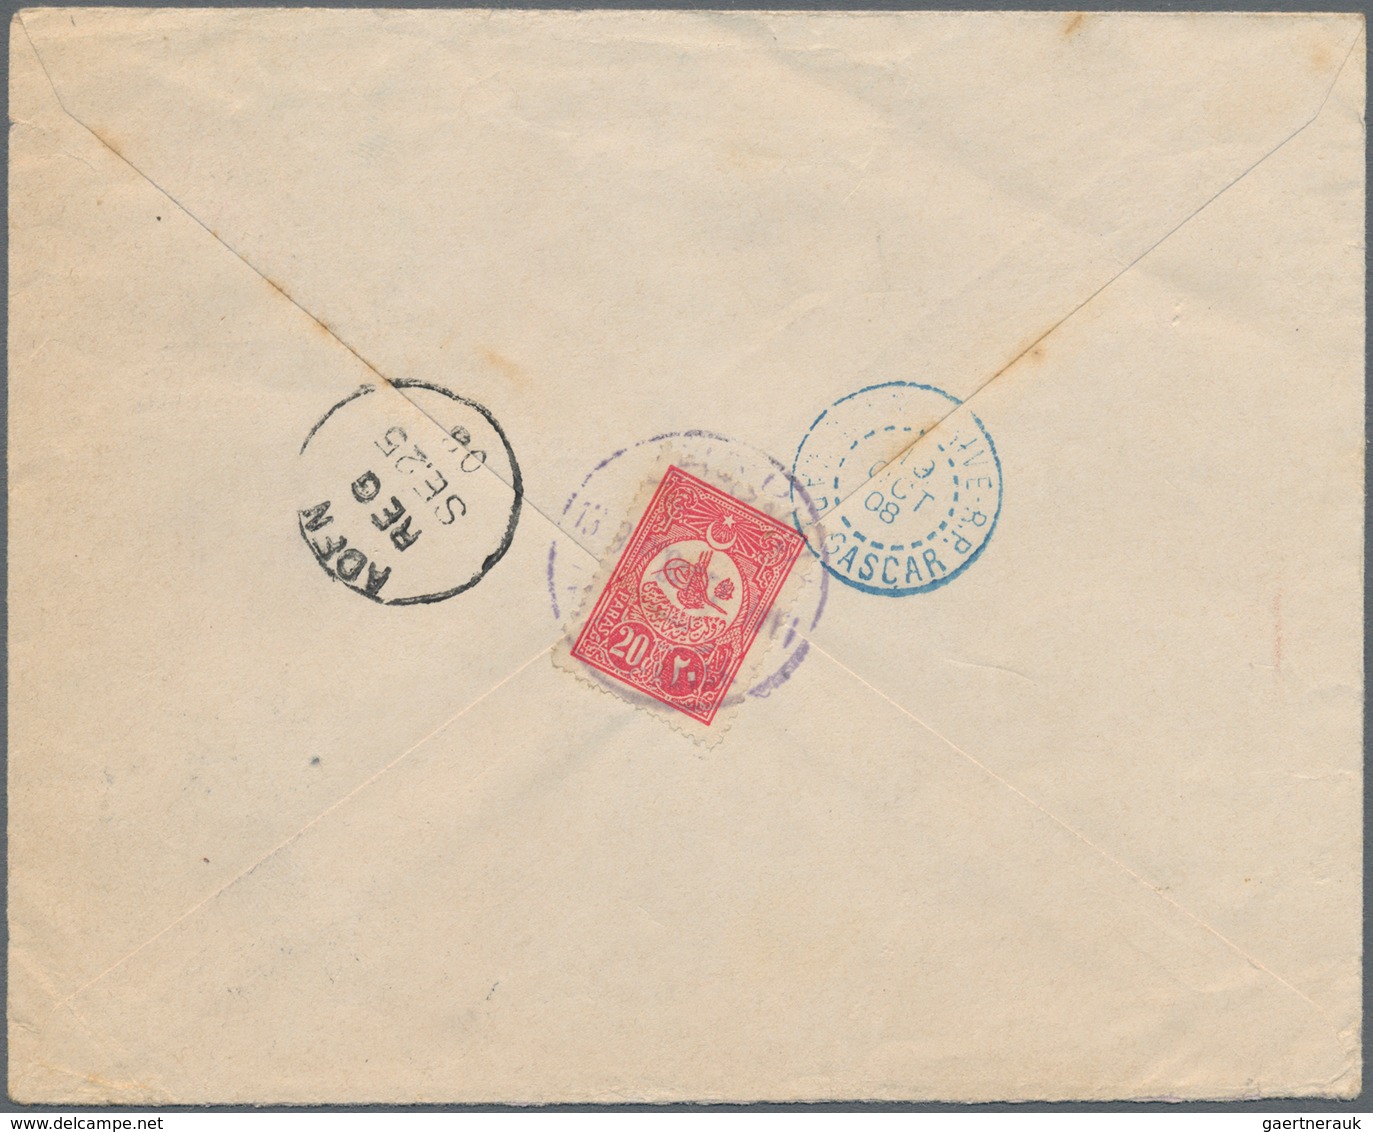 Türkei - Ganzsachen: 1908, Envelope 20 P. Uprated 1 P. And On Reverse 20 P. Canc. "KAVAK 13-9-908" R - Postwaardestukken